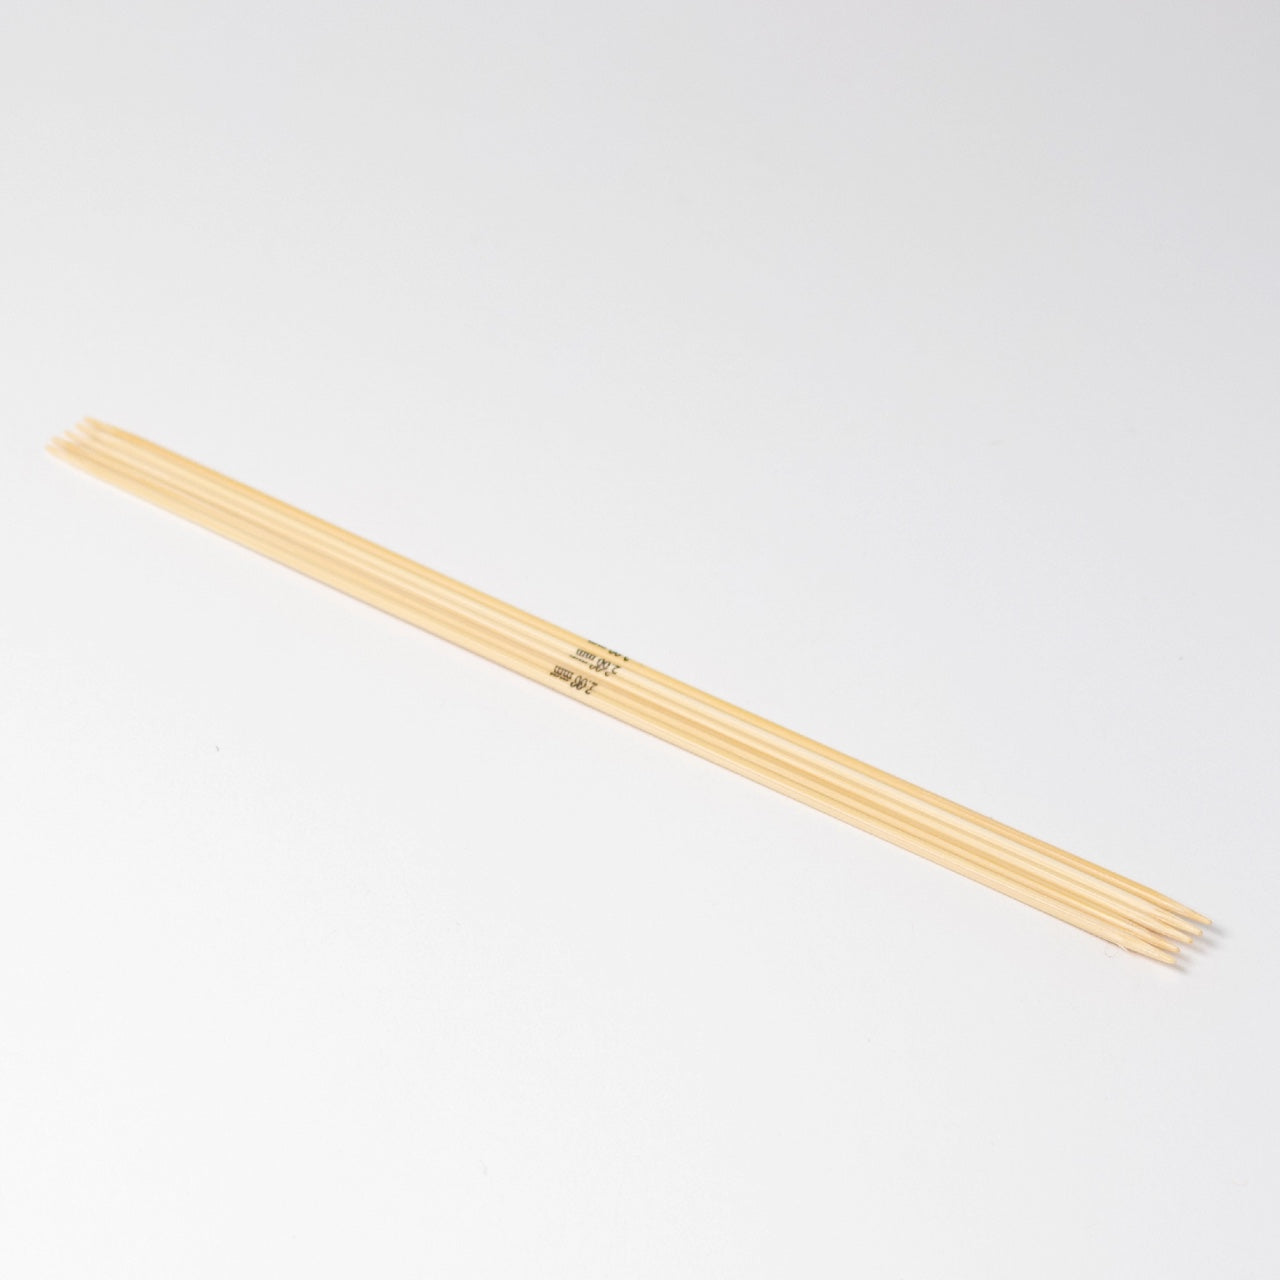 Hjertegarn // STYLE BAMBOO // Strømpepinde 20 cm i bambus str. 2 mm